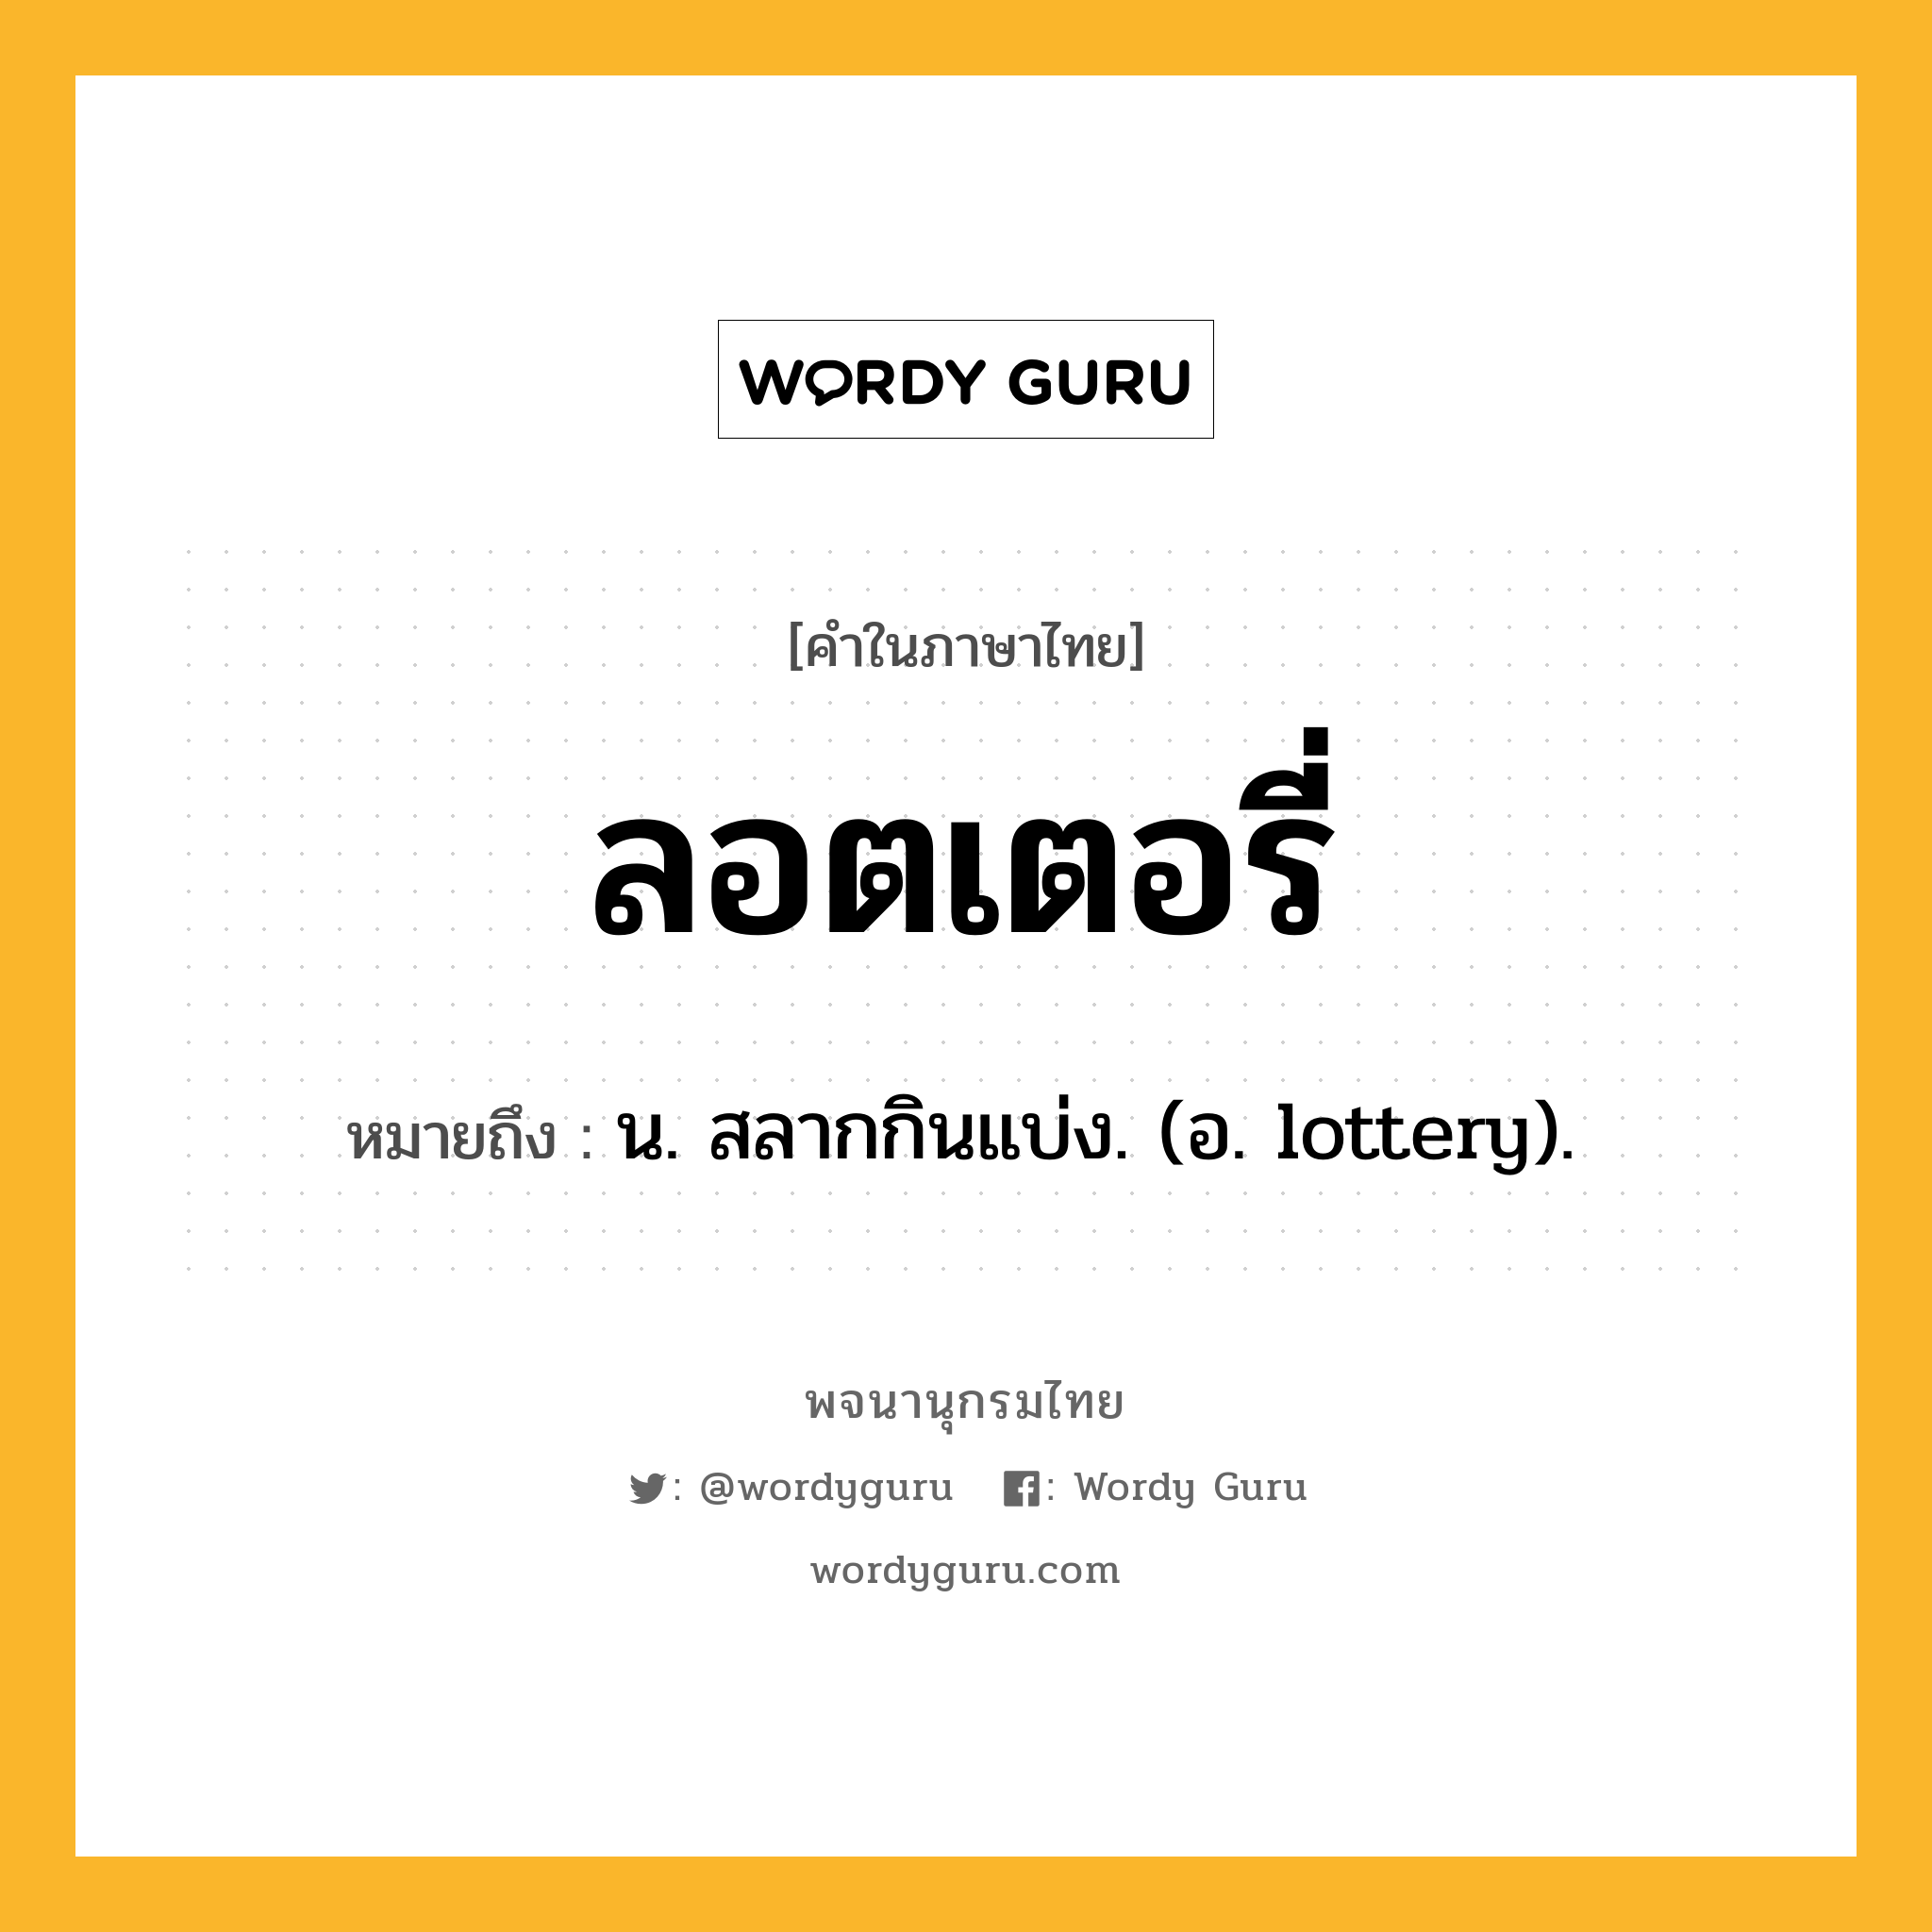 ลอตเตอรี่ ความหมาย หมายถึงอะไร?, คำในภาษาไทย ลอตเตอรี่ หมายถึง น. สลากกินแบ่ง. (อ. lottery).